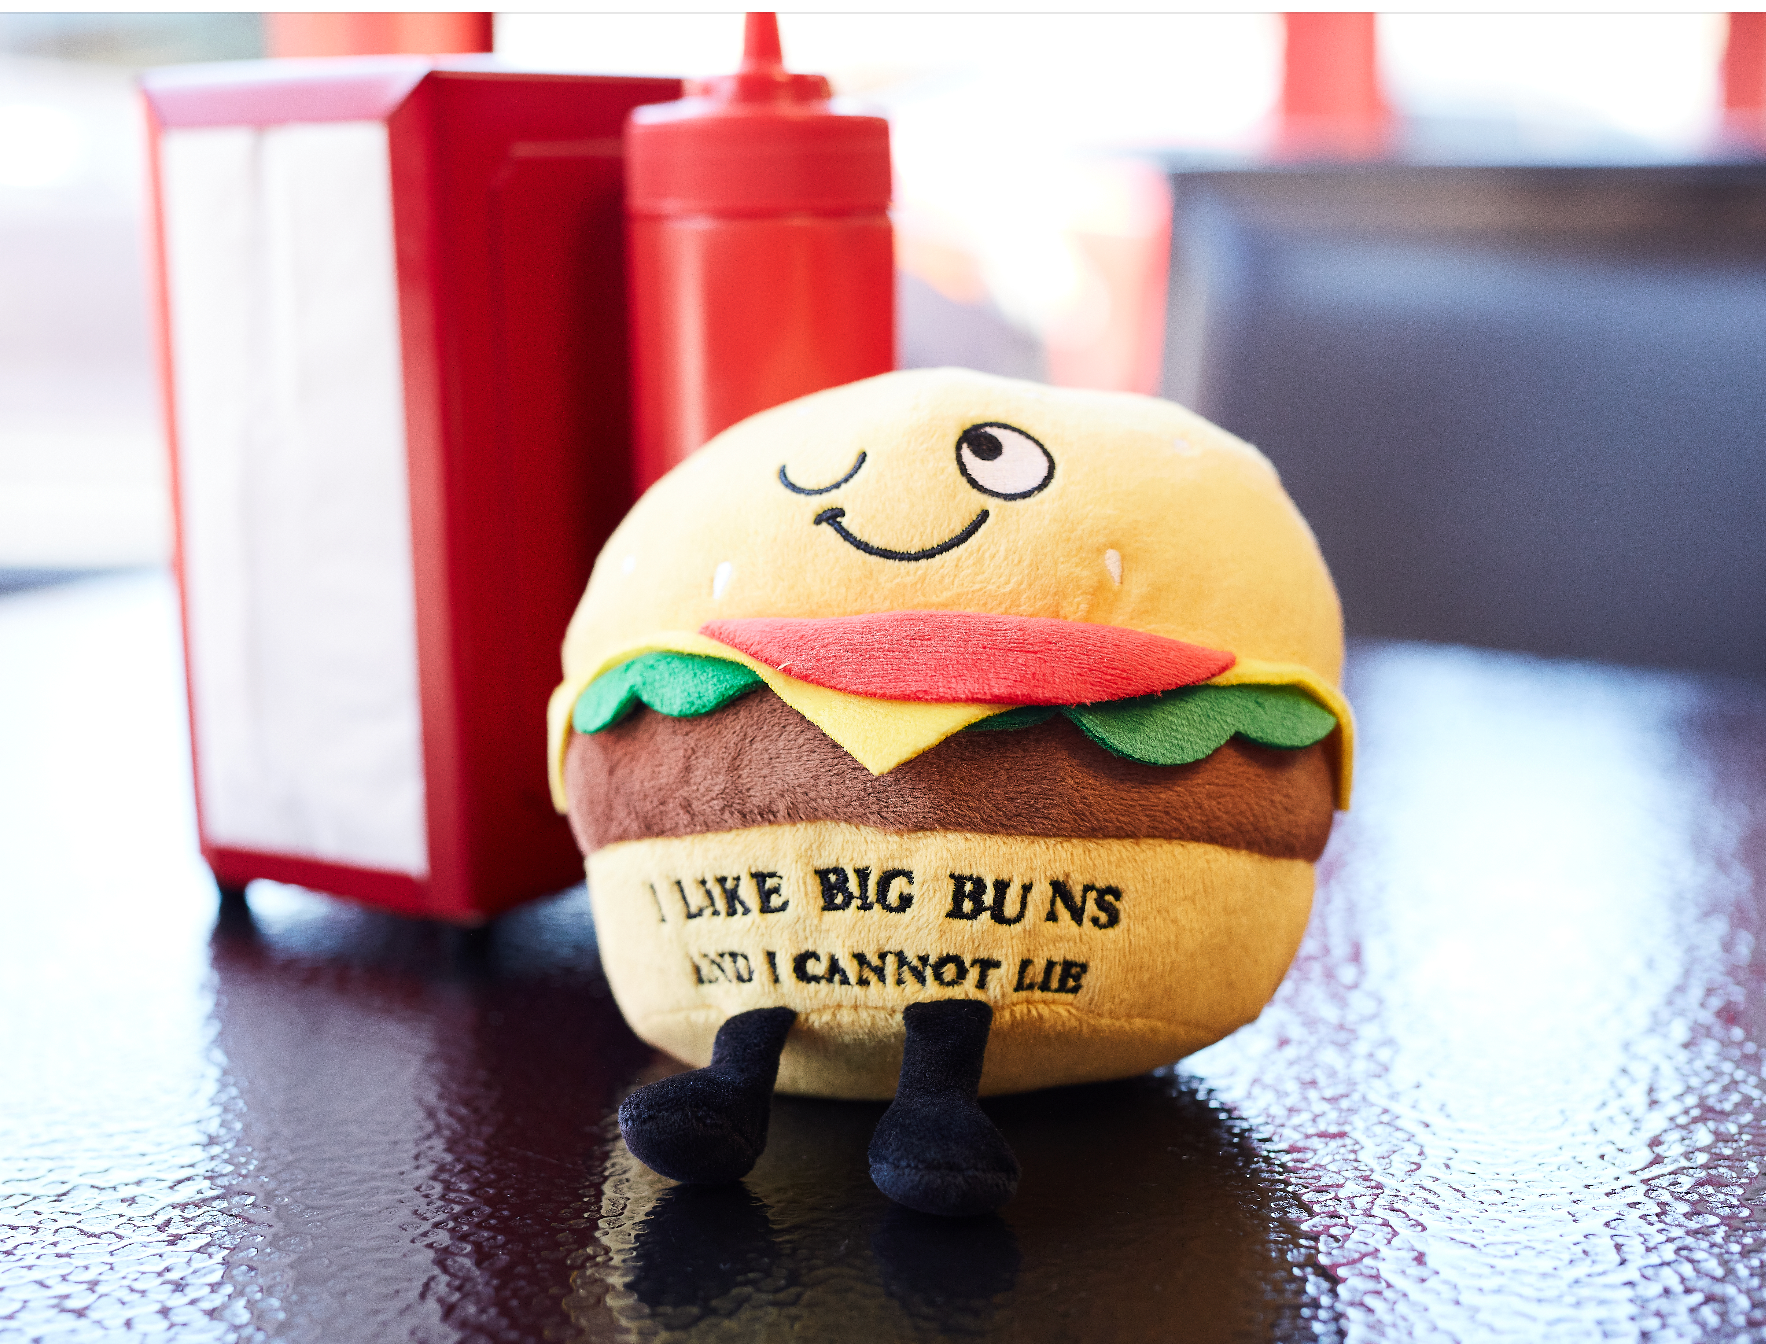 &quot;I Like Big Buns &amp; I Cannot Lie&quot; Plush Hamburger